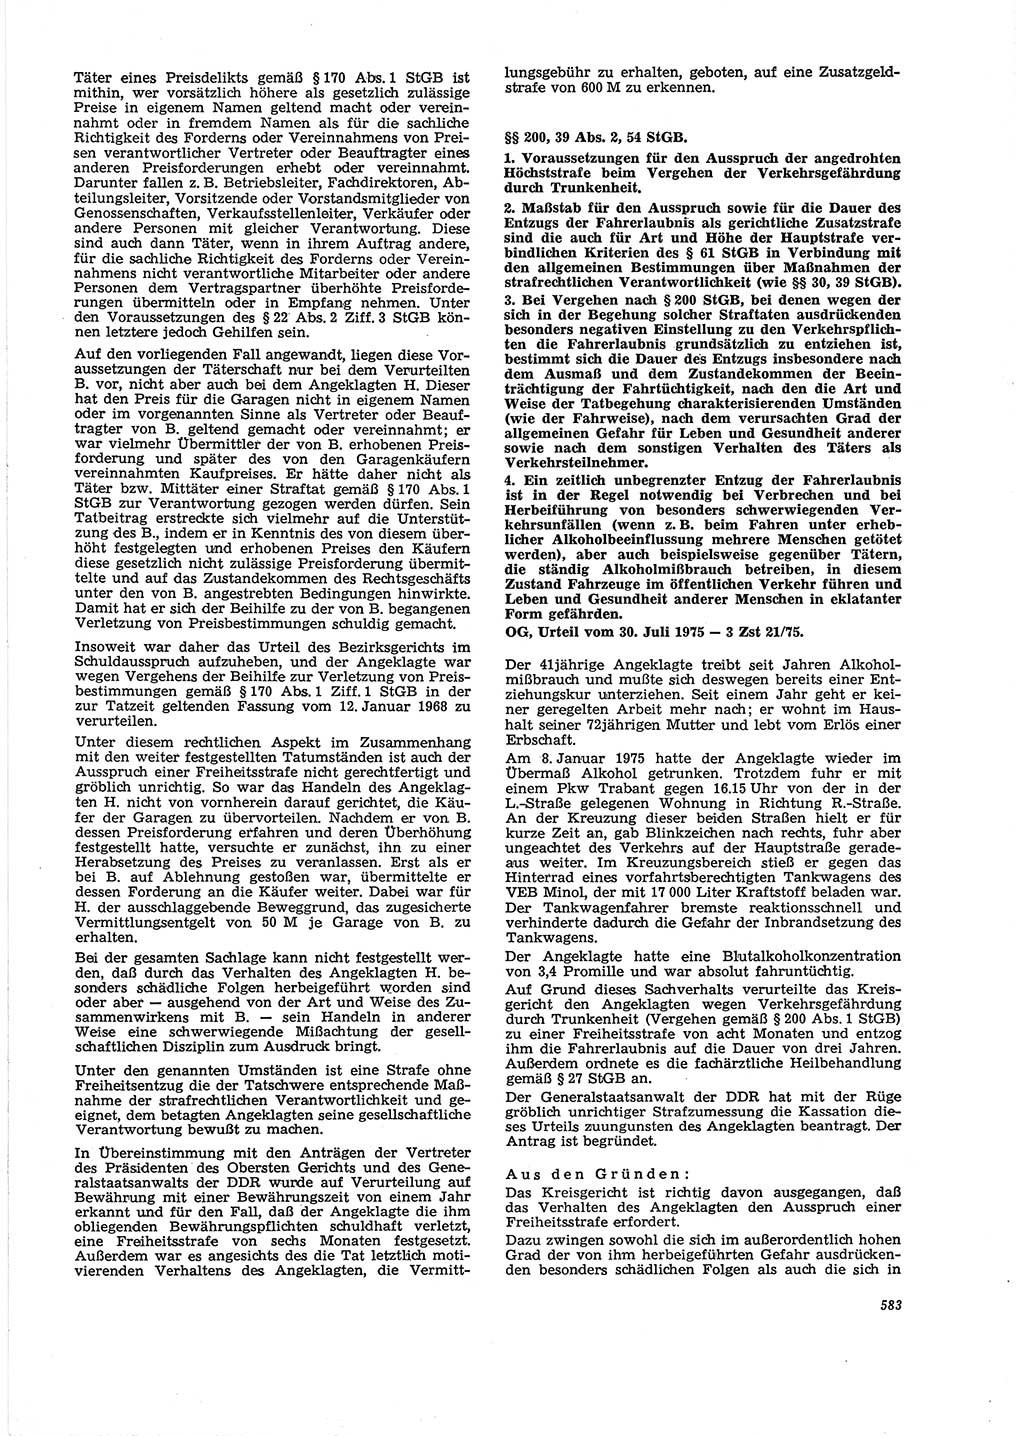 Neue Justiz (NJ), Zeitschrift für Recht und Rechtswissenschaft [Deutsche Demokratische Republik (DDR)], 29. Jahrgang 1975, Seite 583 (NJ DDR 1975, S. 583)